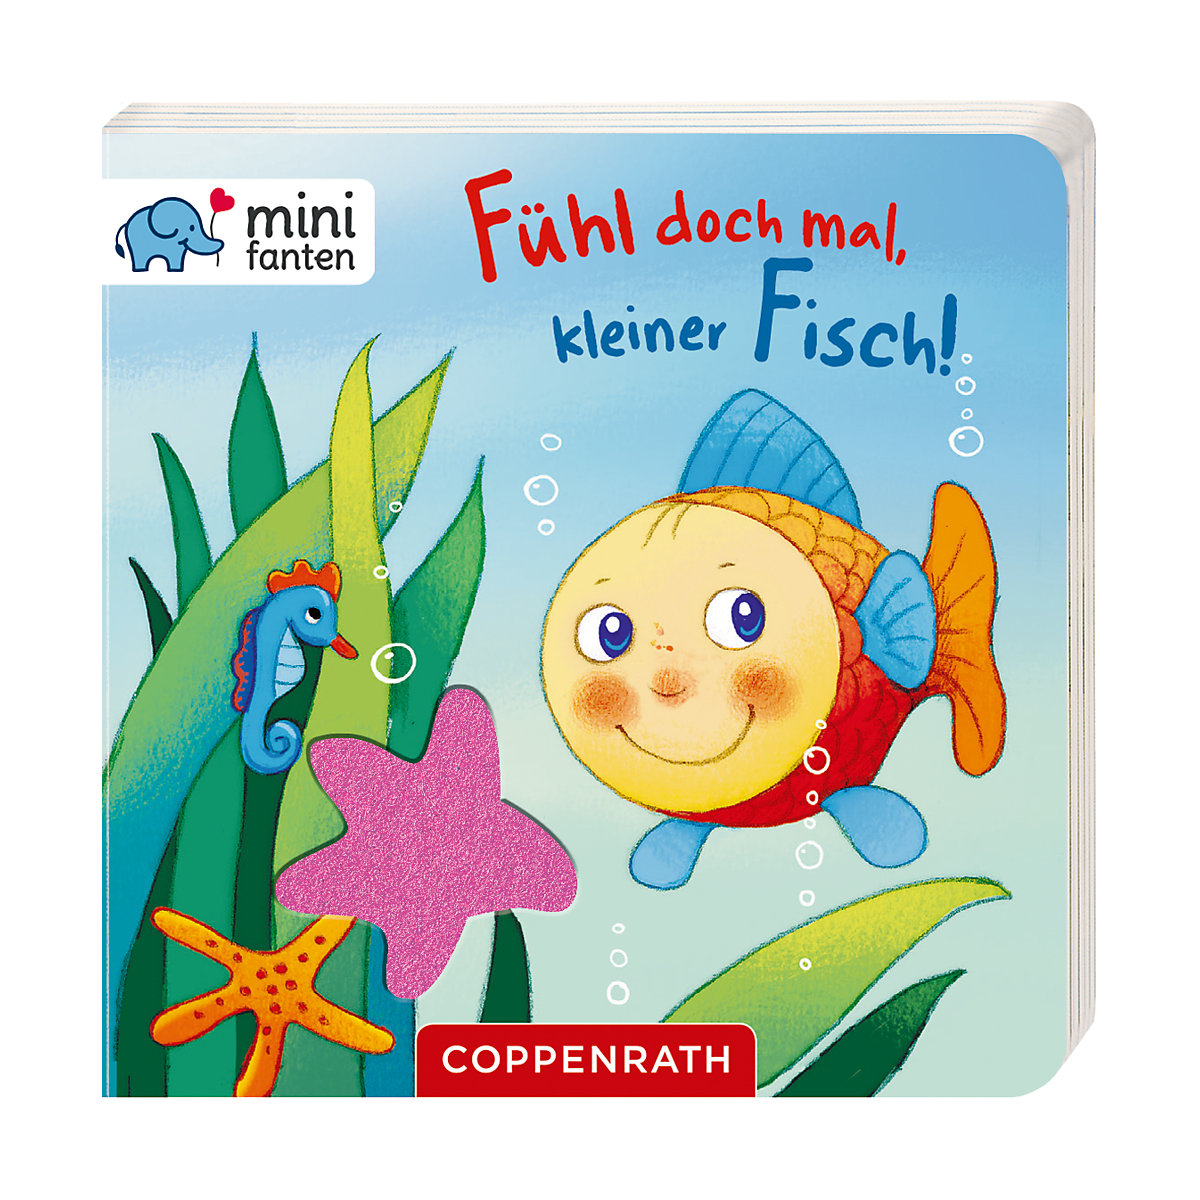 Coppenrath Verlag minifanten 26: Fühl doch mal kleiner Fisch!